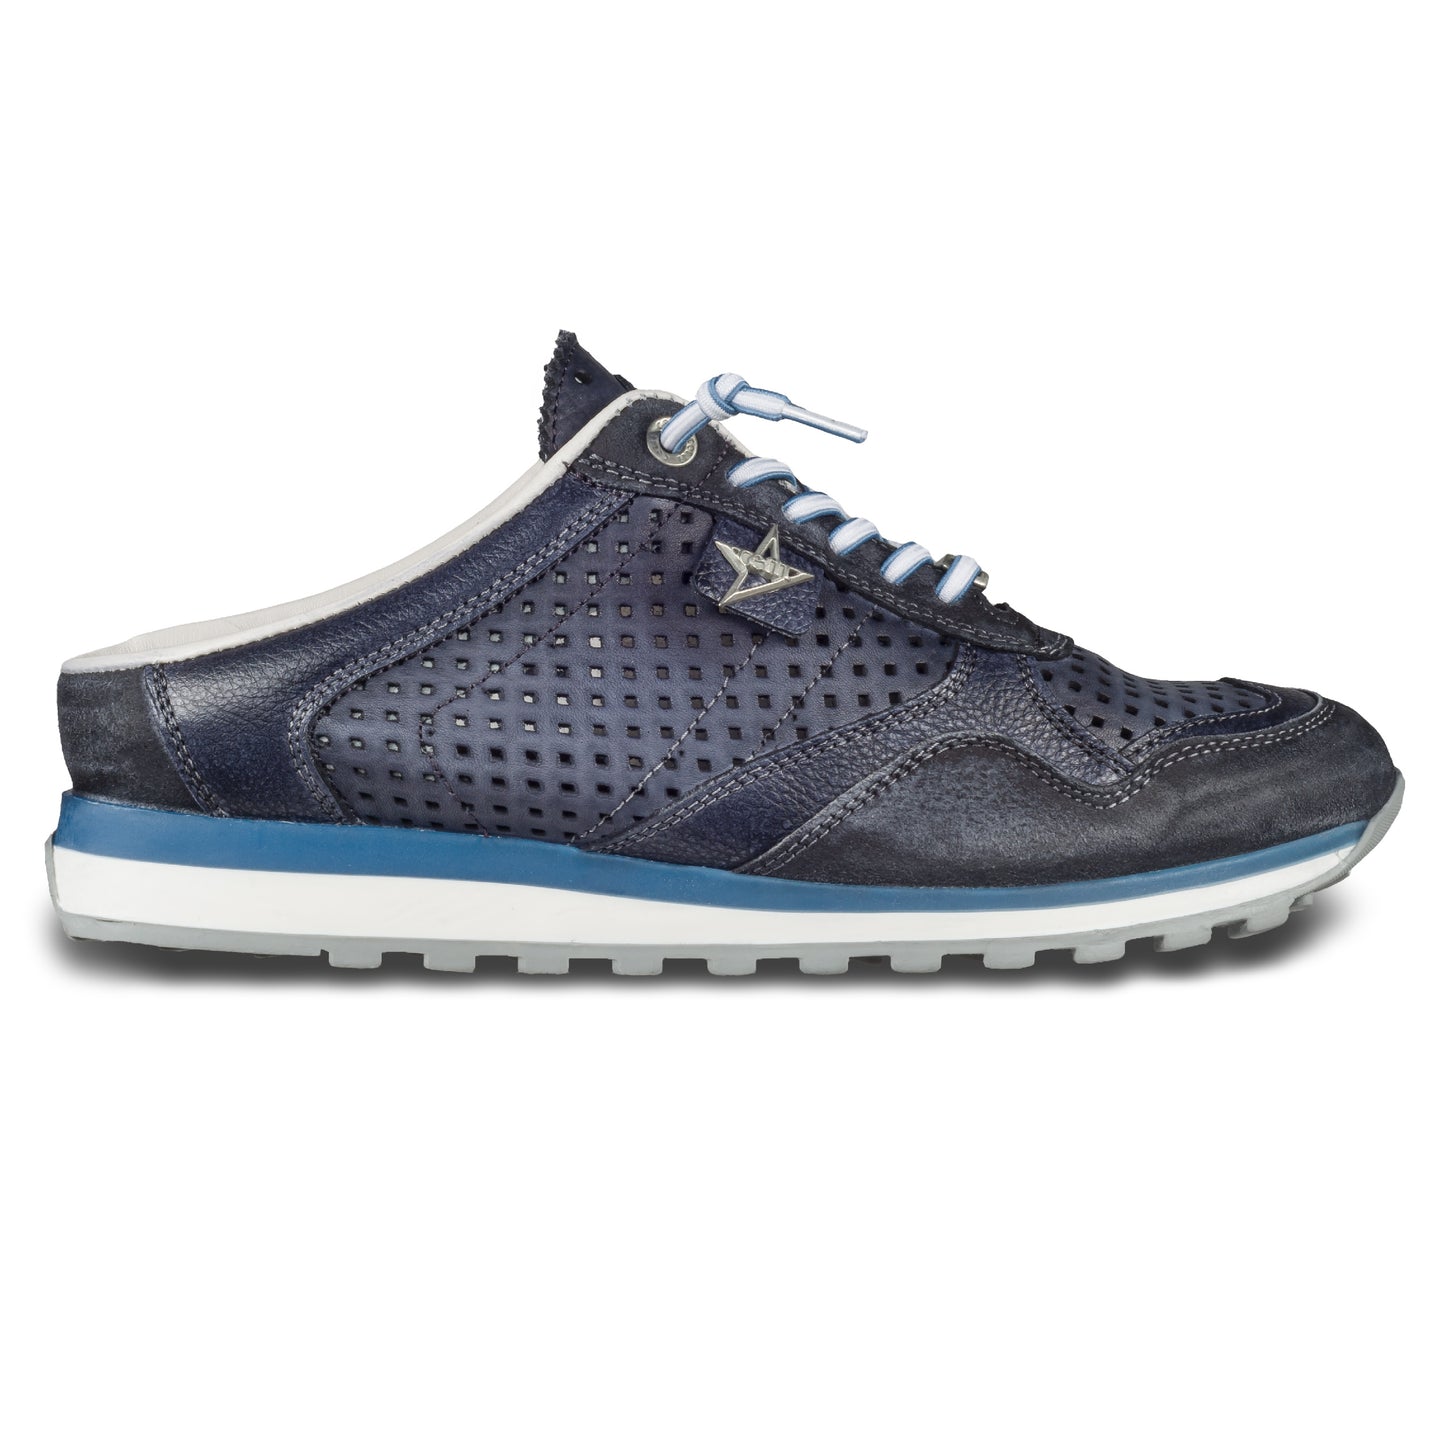 CETTI Herren Leder Sneaker-Mule, Modell „C848“ in dunkelblau / grau (used tin antracita), Made in Spain. Ansicht der Ferse und Sohlenunterseite. Ansicht der Außenseite rechter Schuh. 